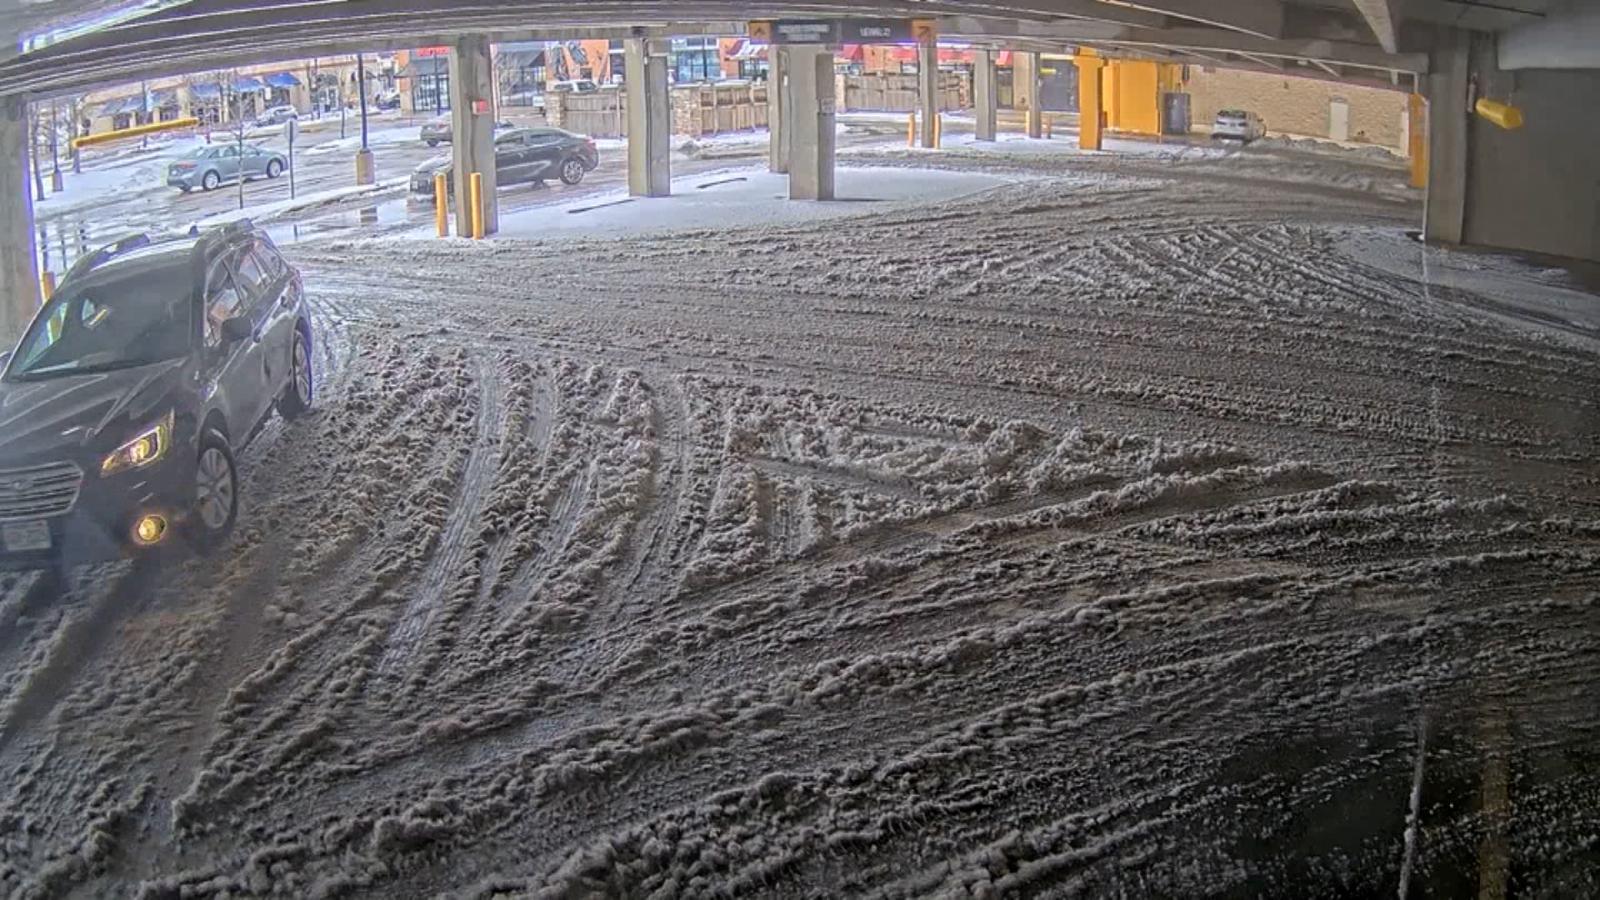 Część parkingu w Milwaukee zawaliła się pod ciężarem śniegu